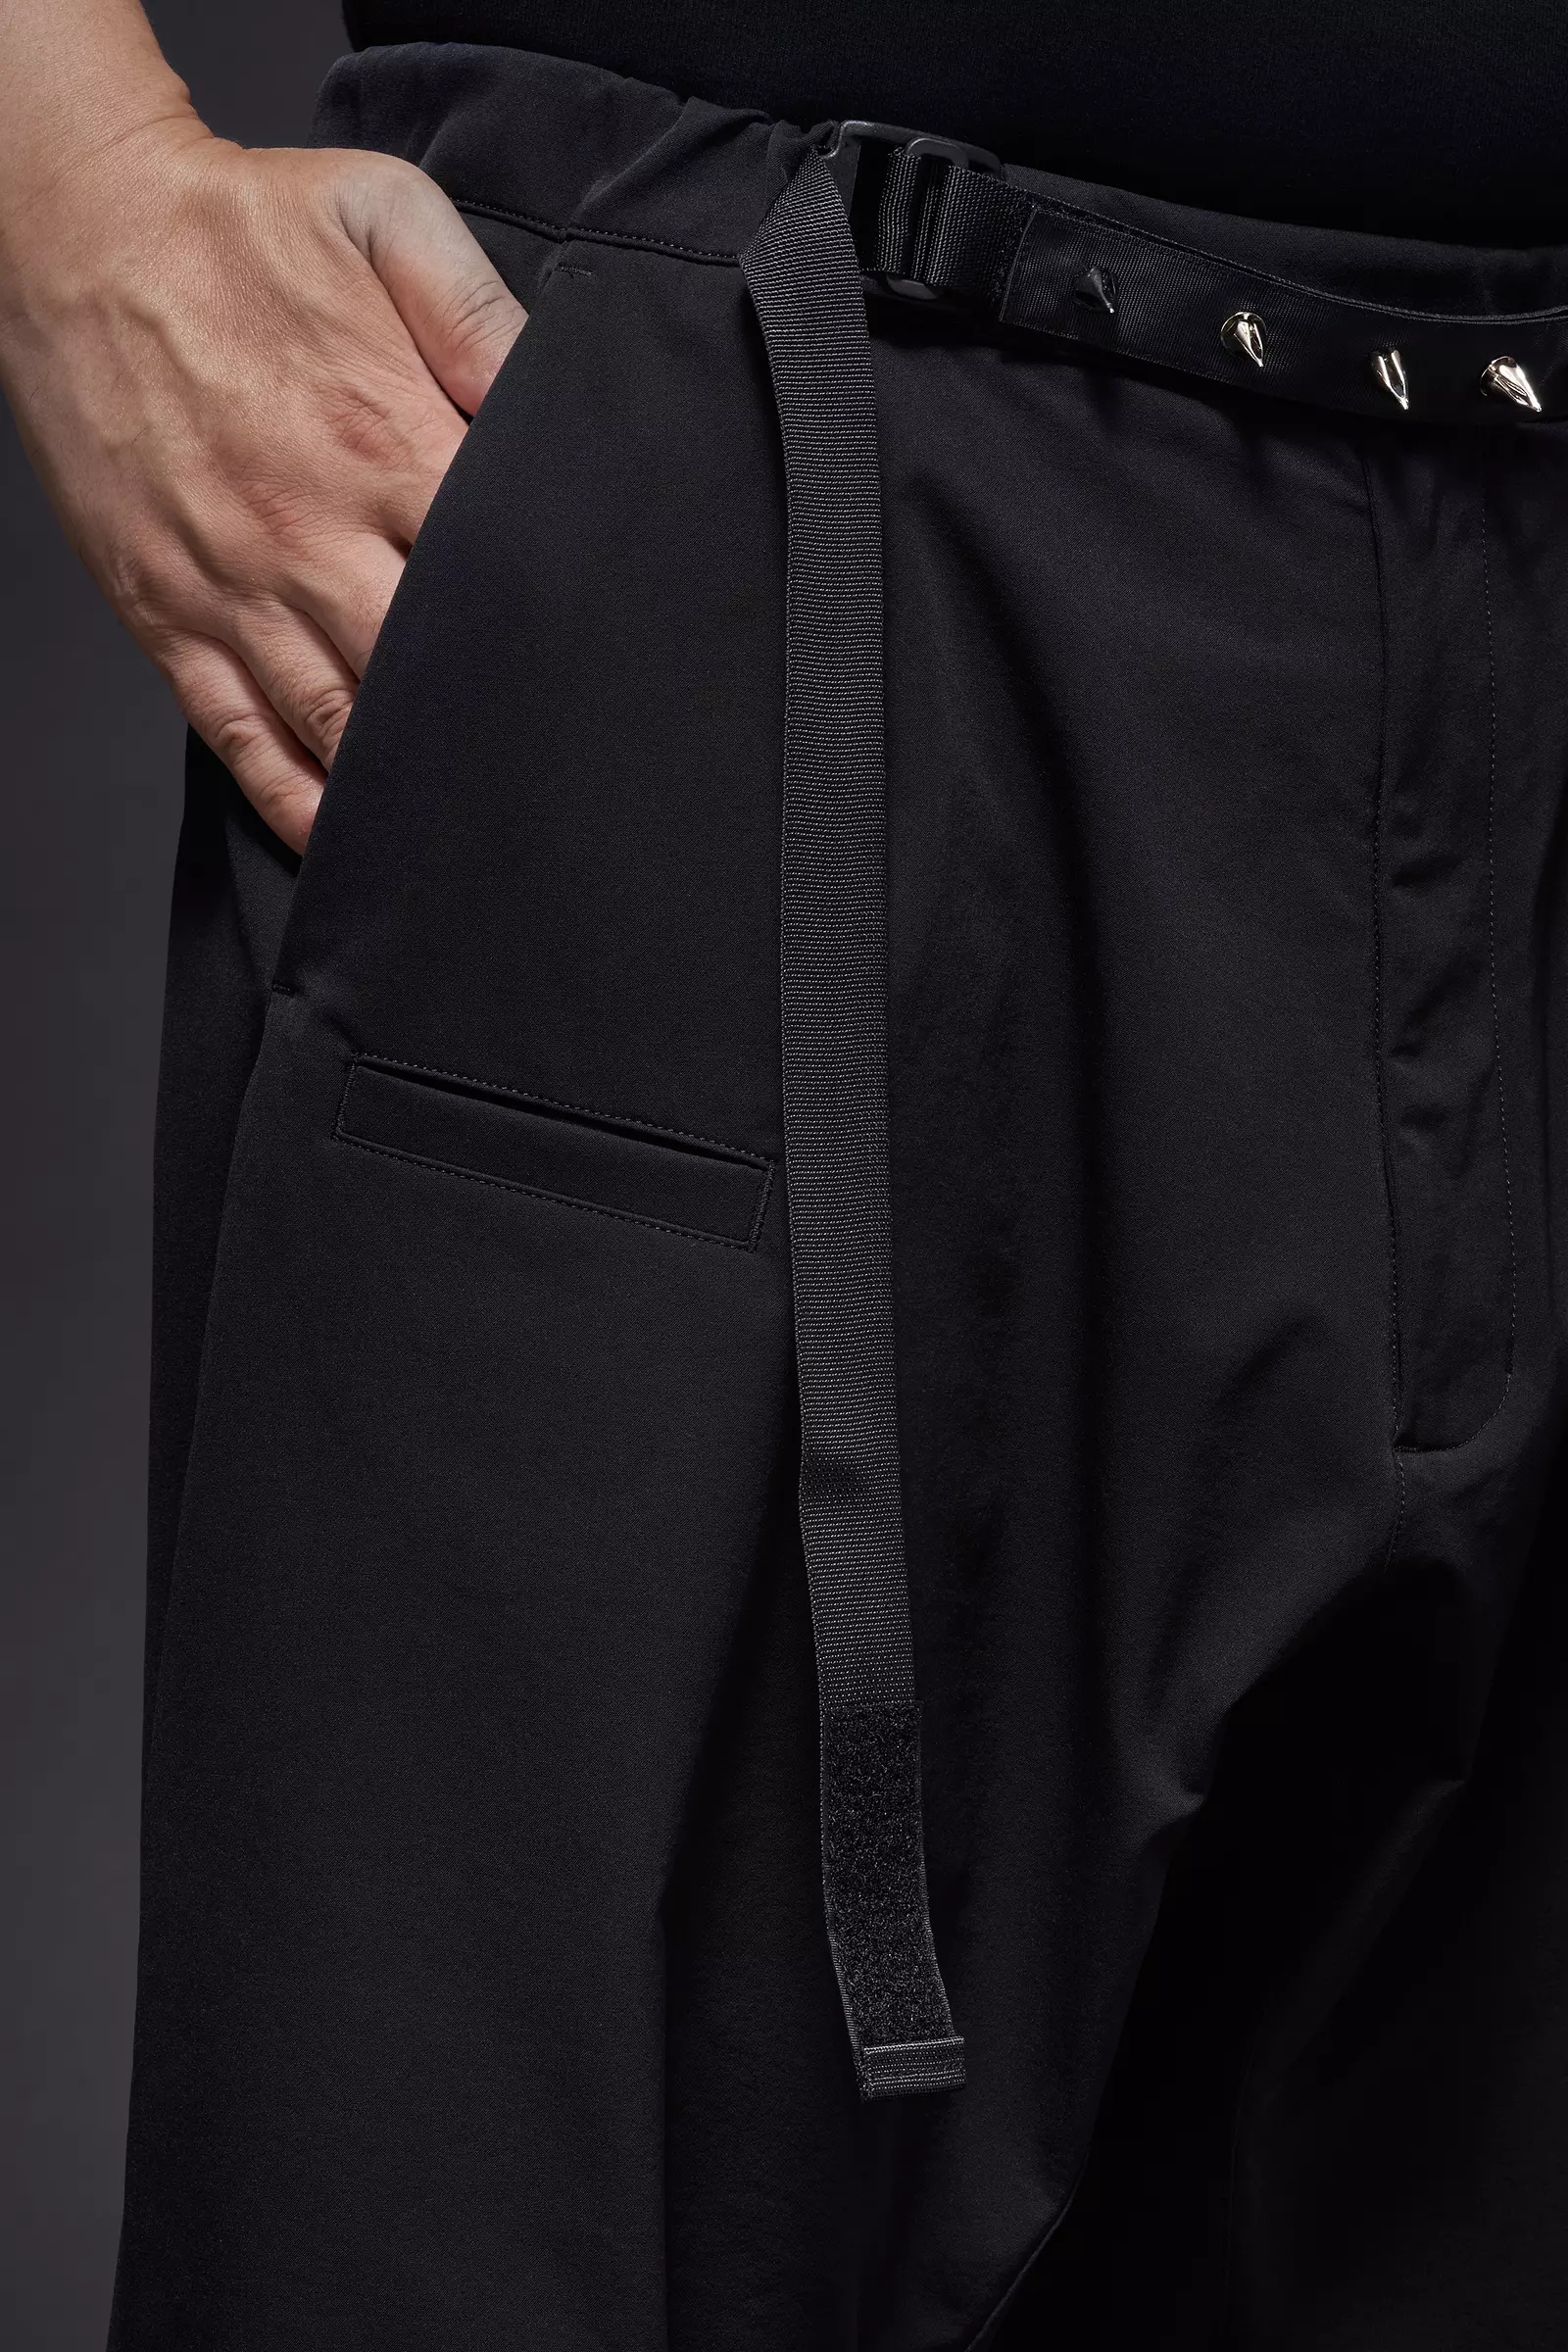 P17-DS schoeller® Dryskin™ Web Belt Trouser Black - 13